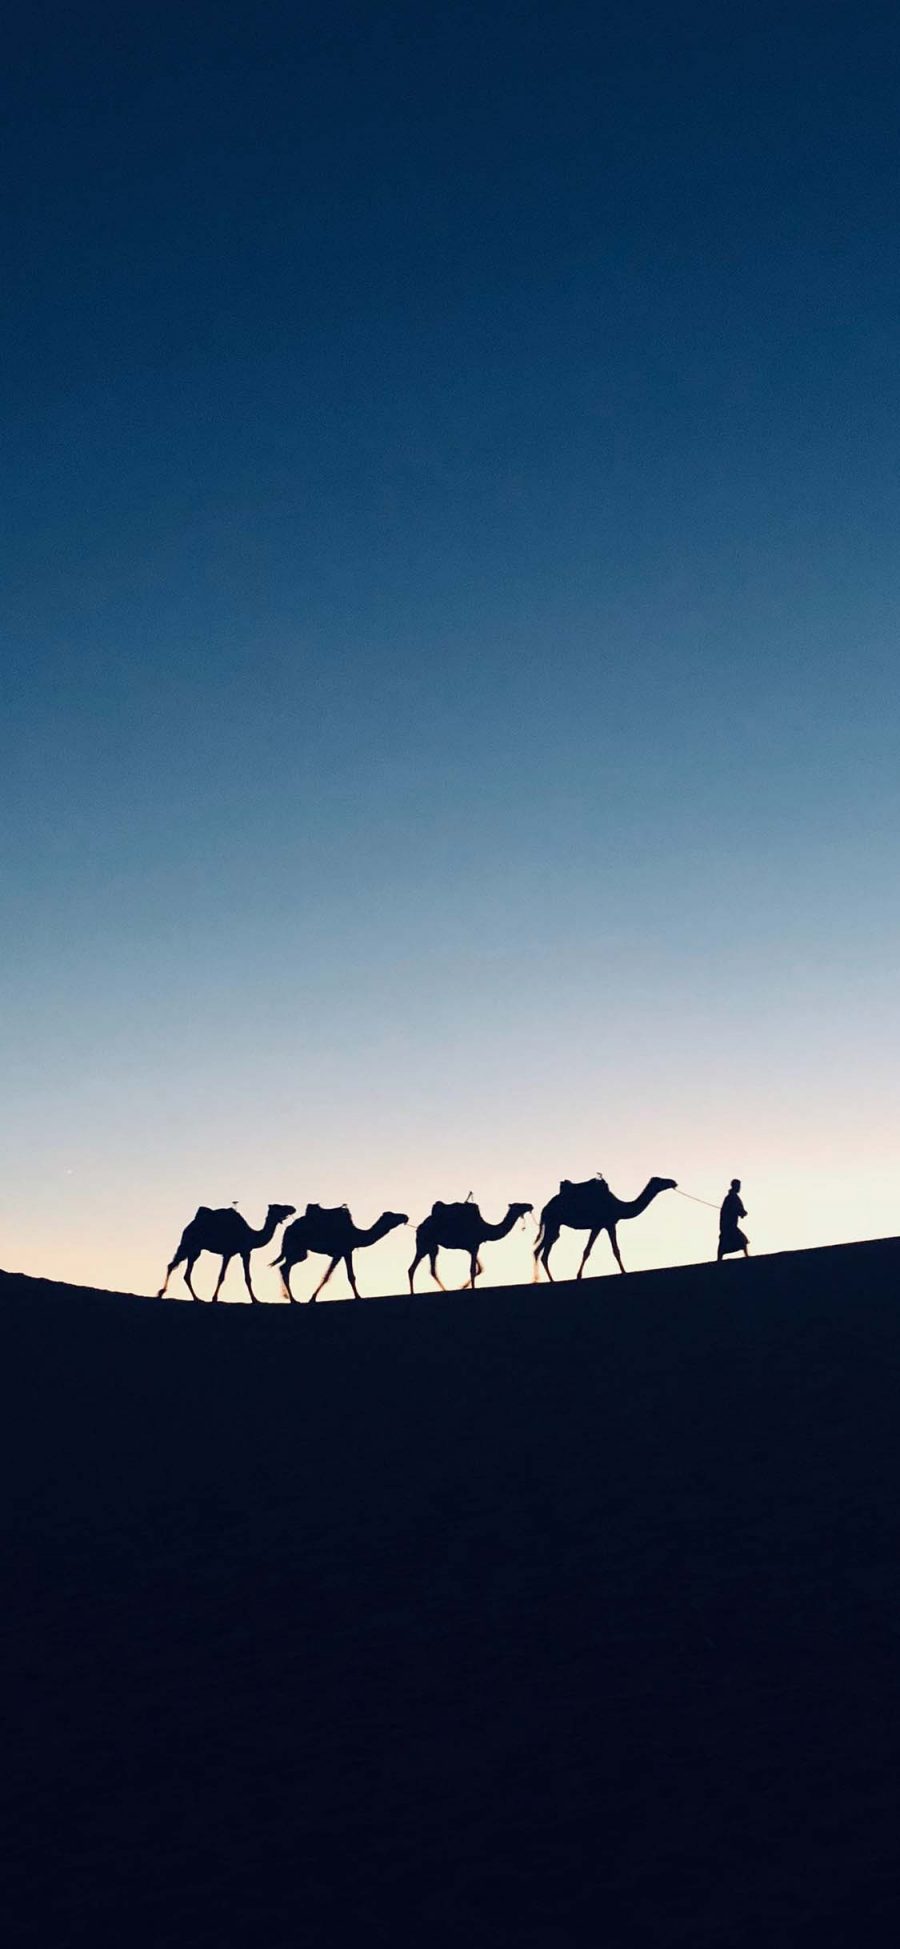 [2436×1125]沙漠 行走 骆驼队伍 苹果手机壁纸图片